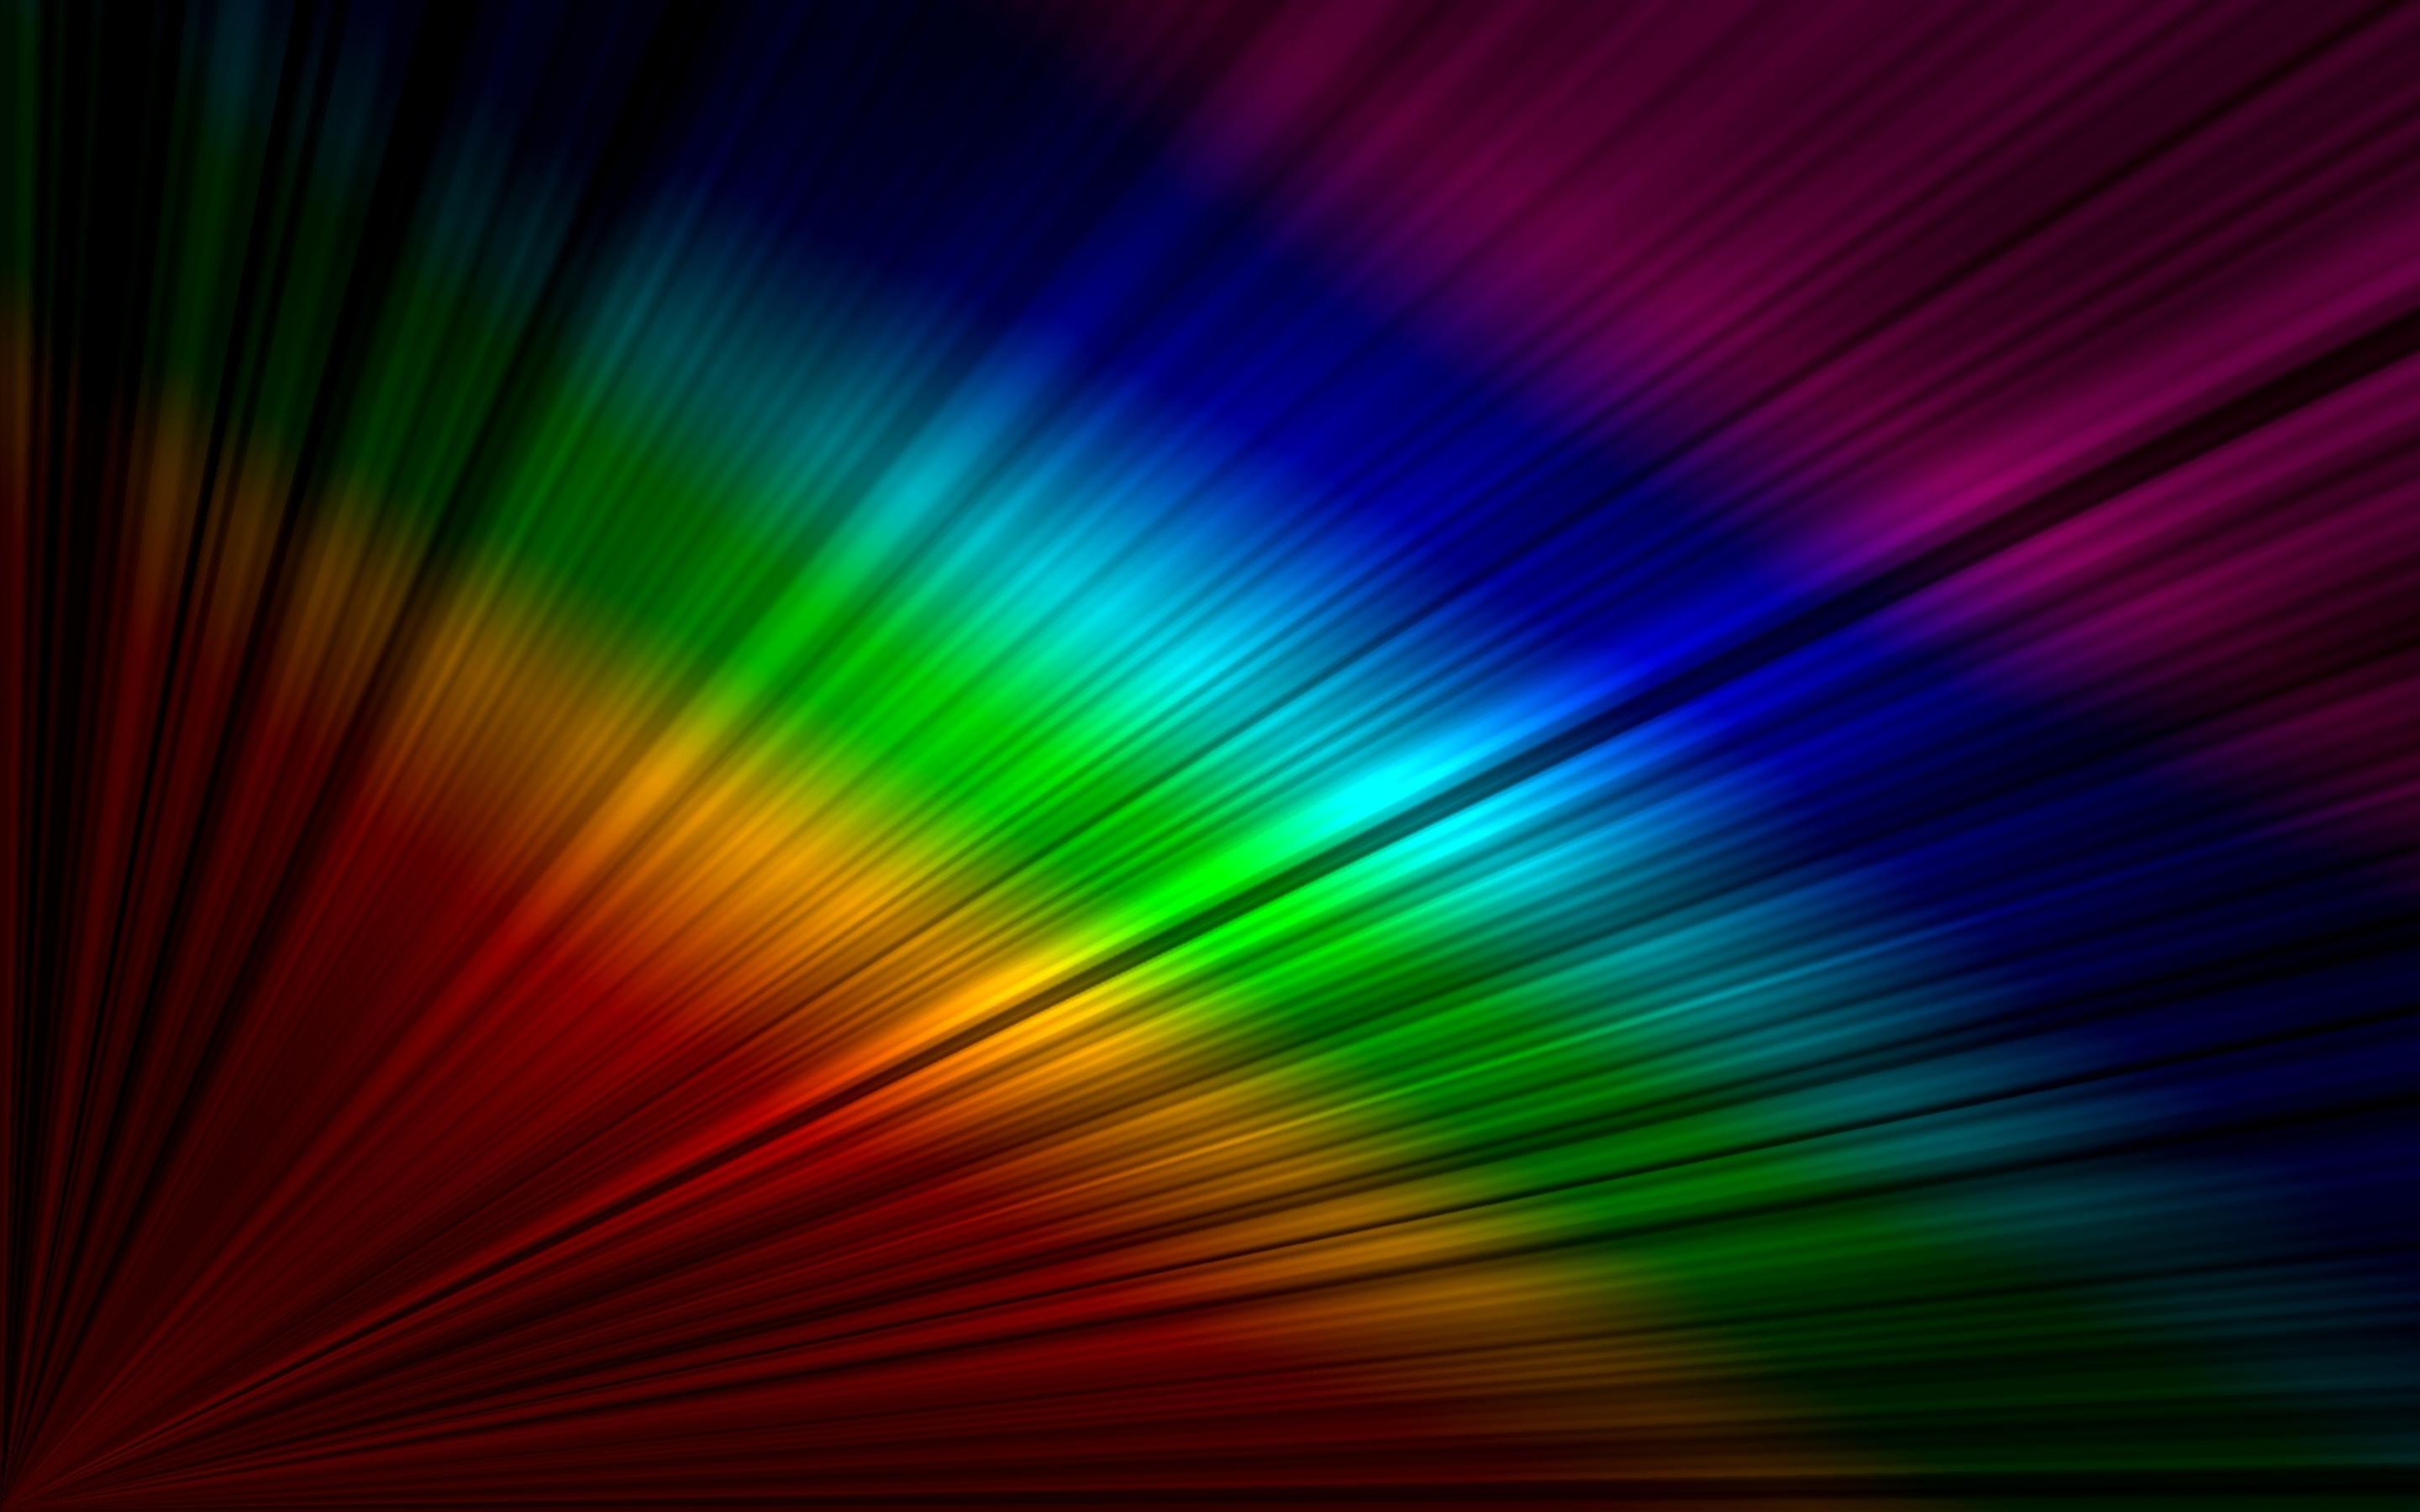 Rainbow on the desktop